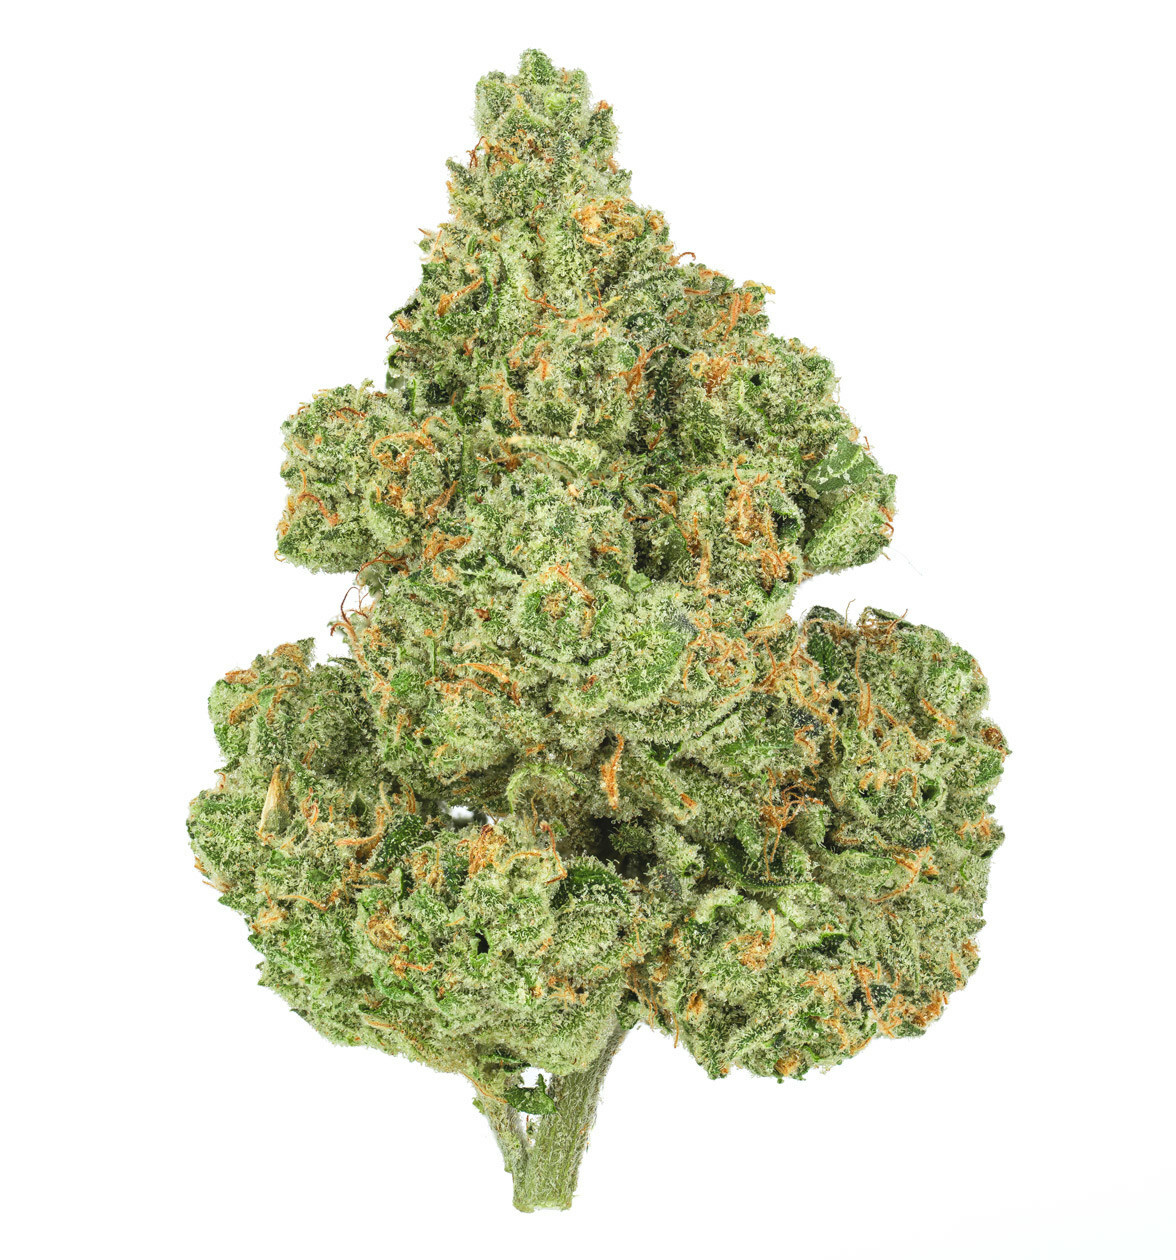 MedReleaf Valour Bud (CNW Group/Aurora Cannabis Inc.)